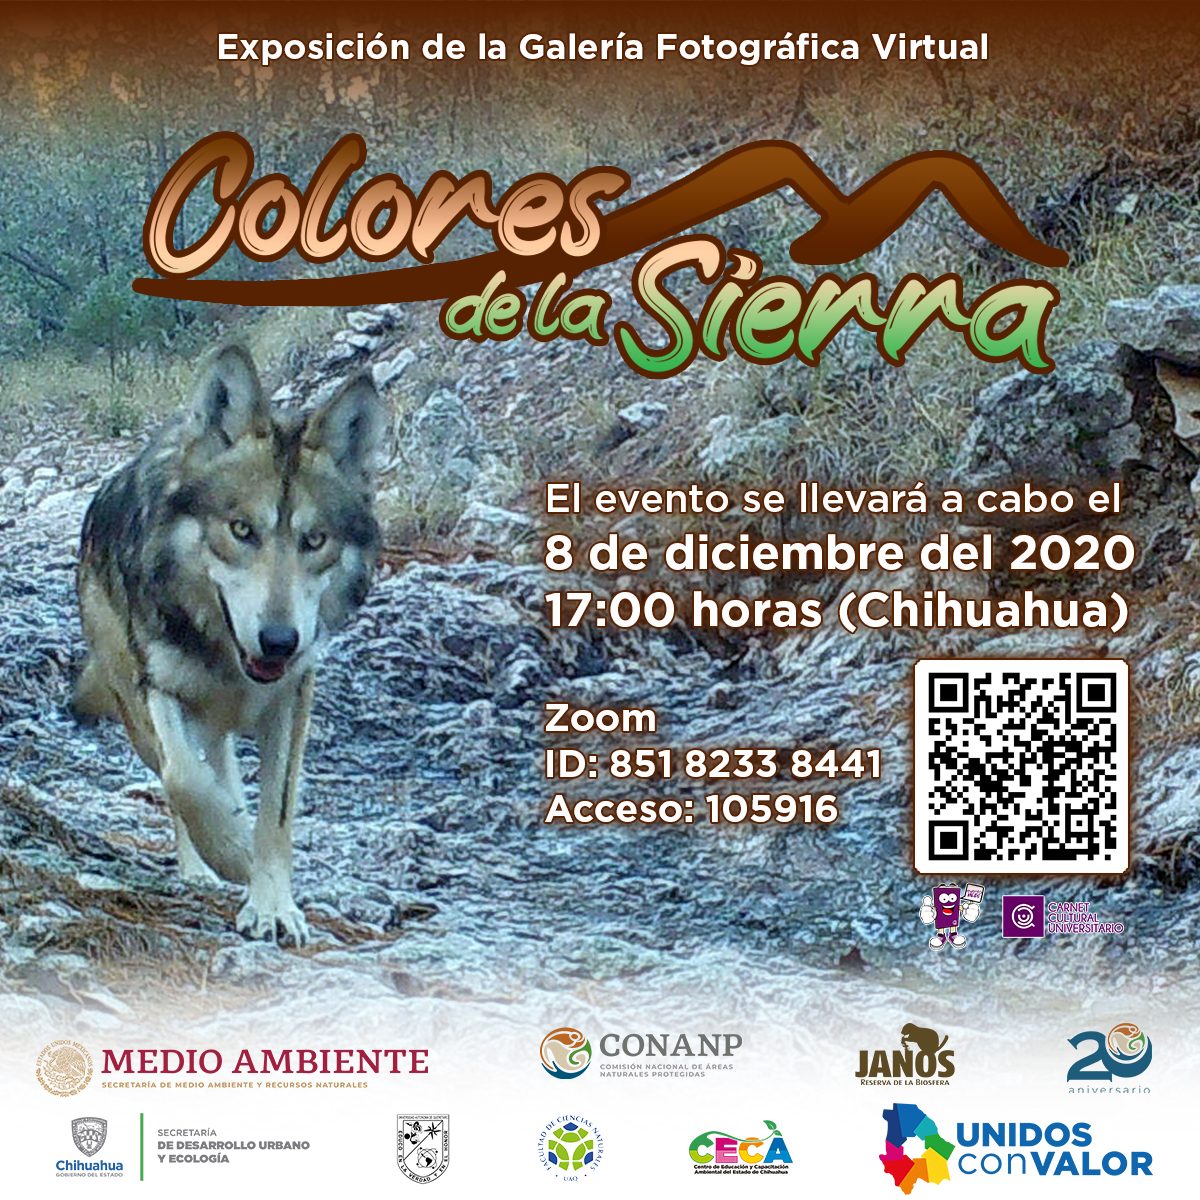 Invitan a la exposición virtual “Colores de la Sierra”